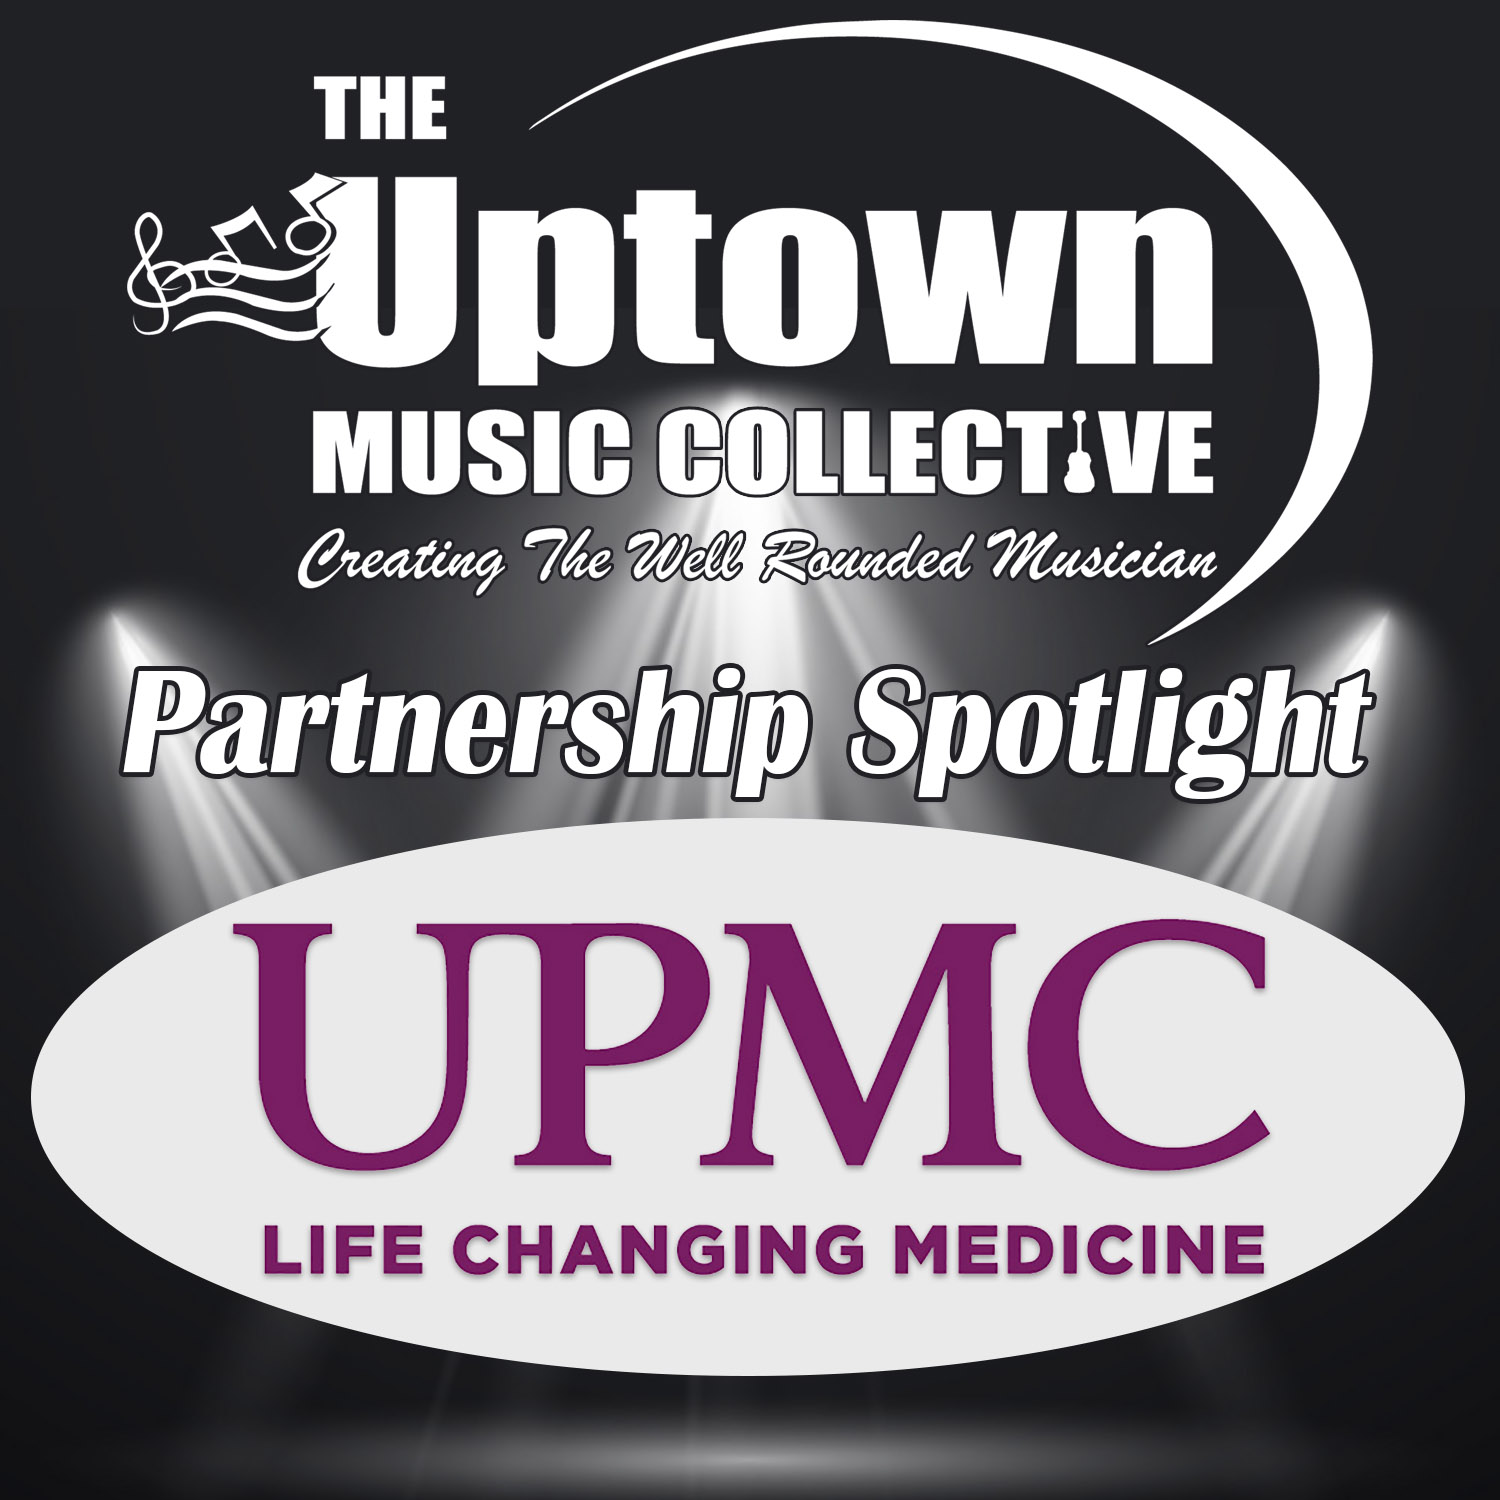 UPMC Partnership Spotlight